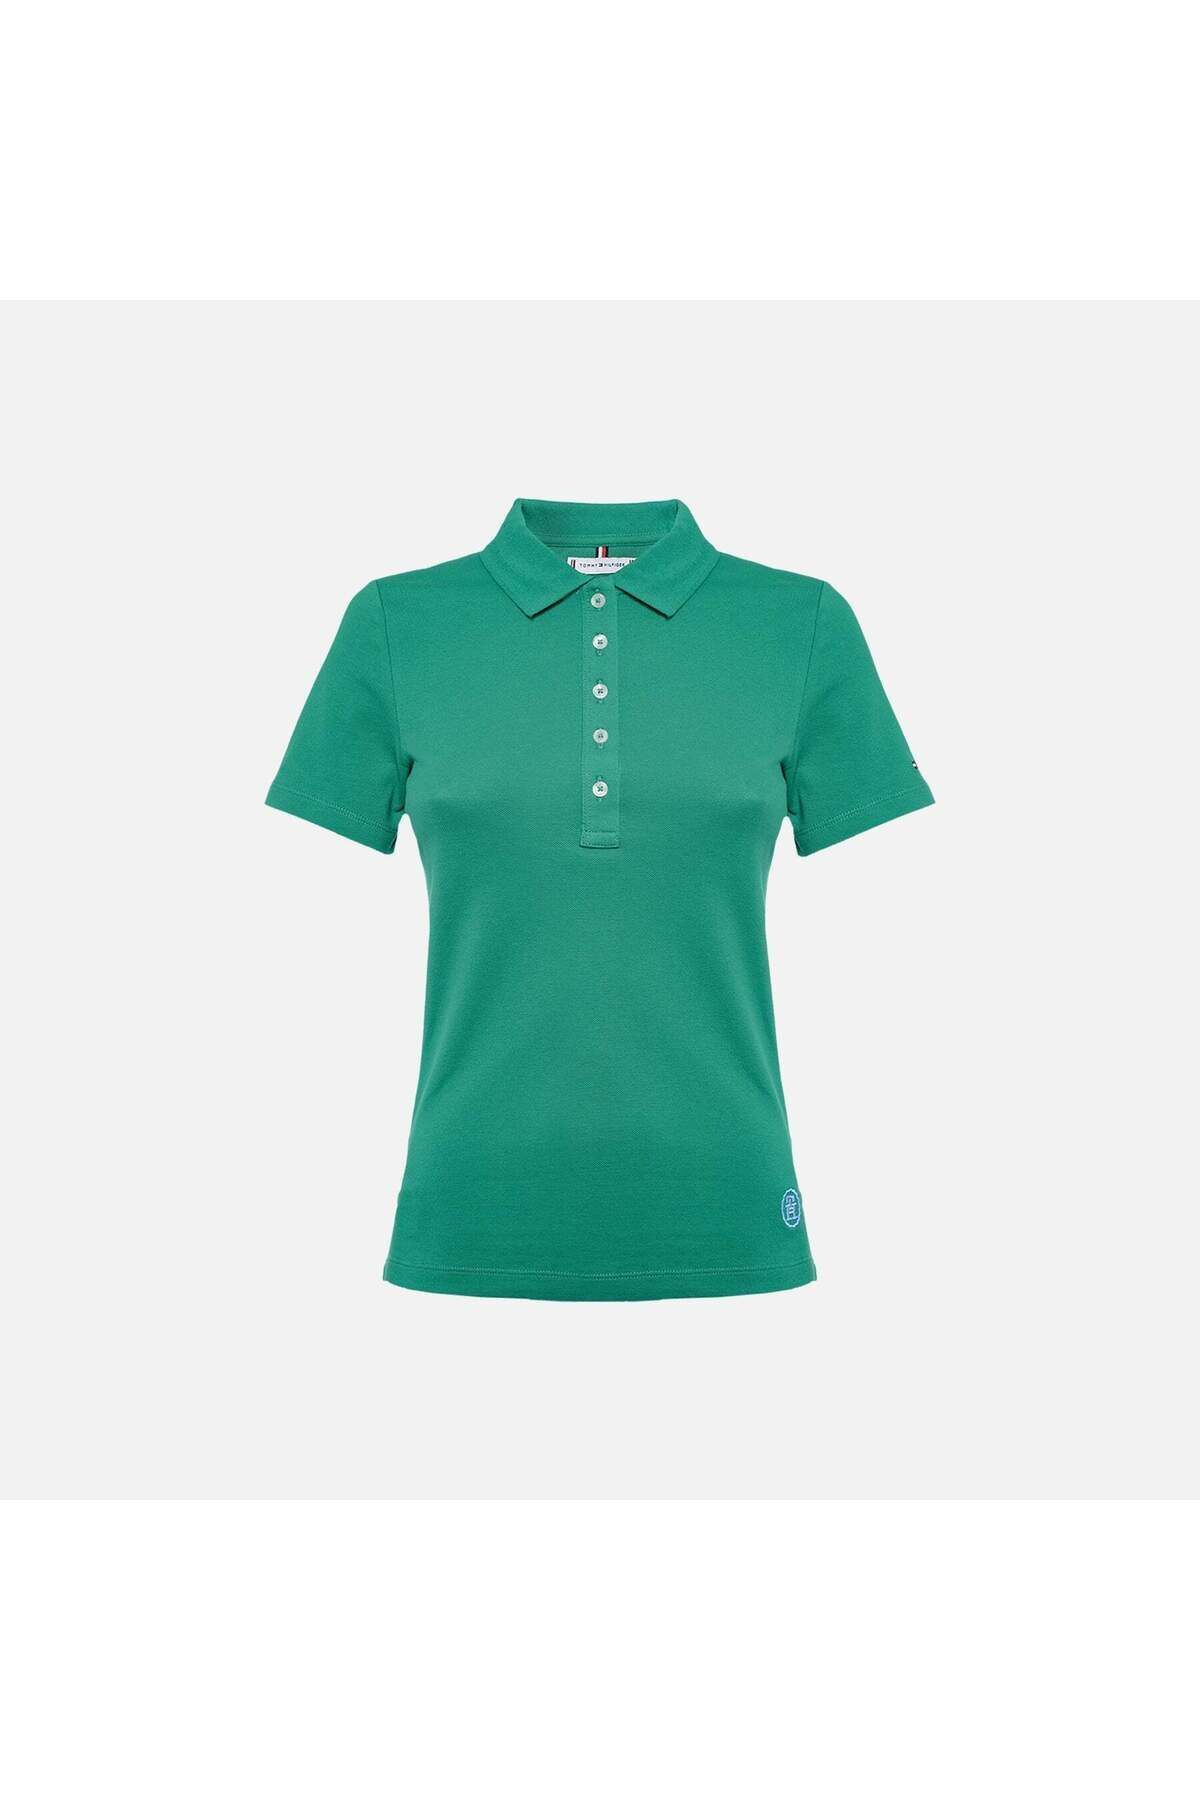 Tommy Hilfiger Kadın Dokuma Polo Yaka Kısa Kol Günlük Yeşil Polo Yaka T-Shirt WW0WW41890-L4B